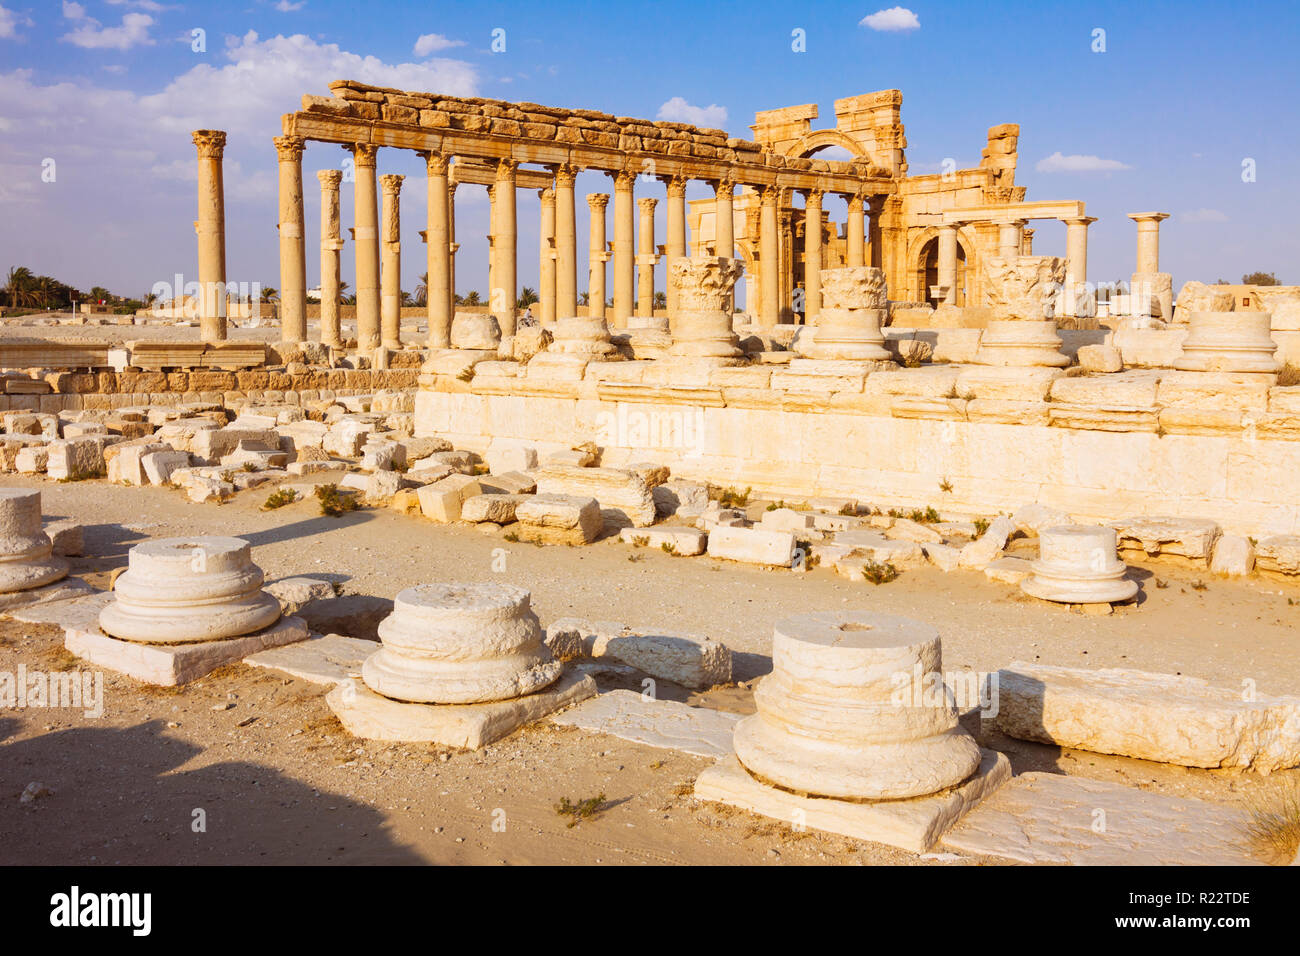 Palmyra, Homs Governatorato, Siria - Maggio 26th, 2009 : GRANDE colonnato e III secolo monumentale arco di trionfo di Palmyra, Romano arco ornamentale Foto Stock